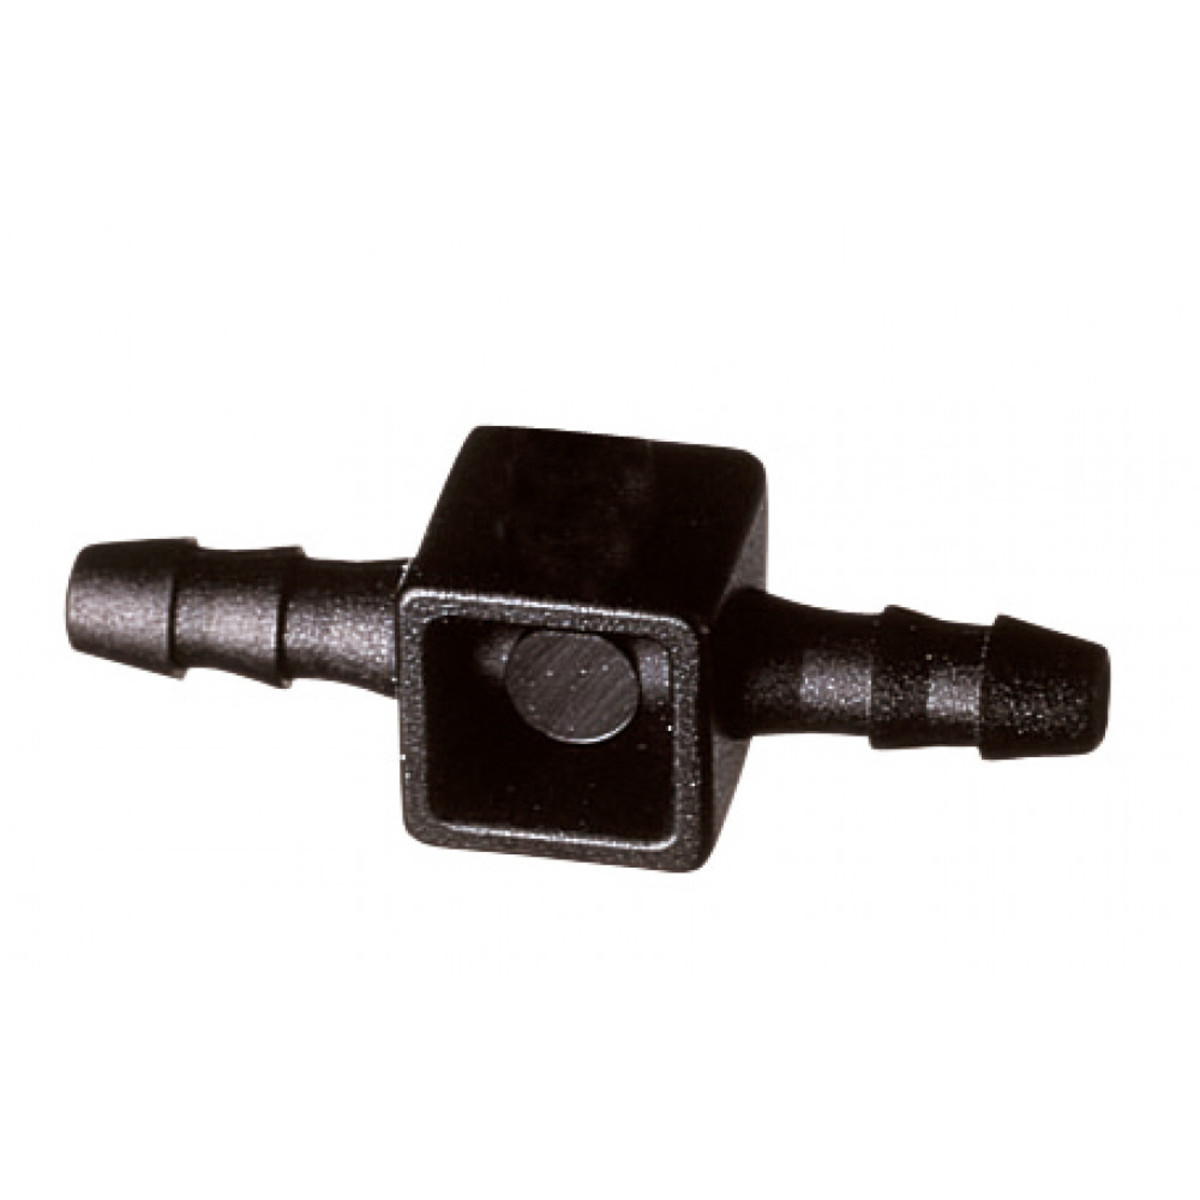 Blumat Mini-hose union 3mm